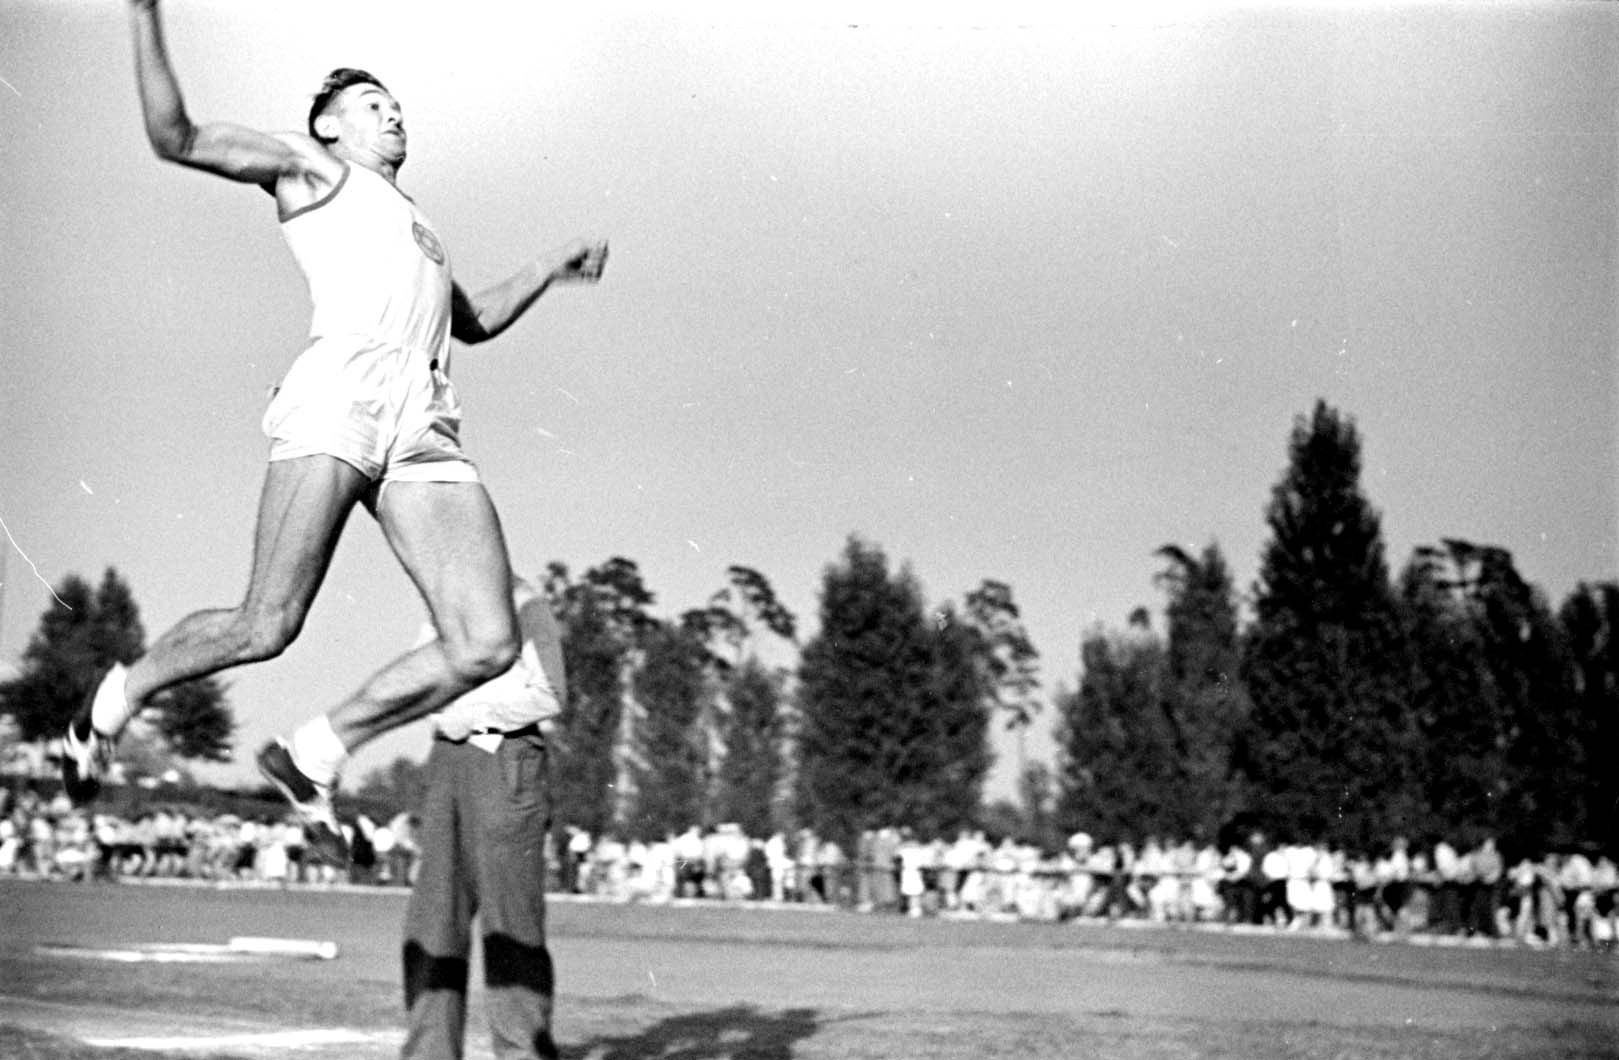 Германия, август 1937.  Соревнования по прыжкам в длину в ходе мероприятия «Маккаби», посвященного легкой атлетике